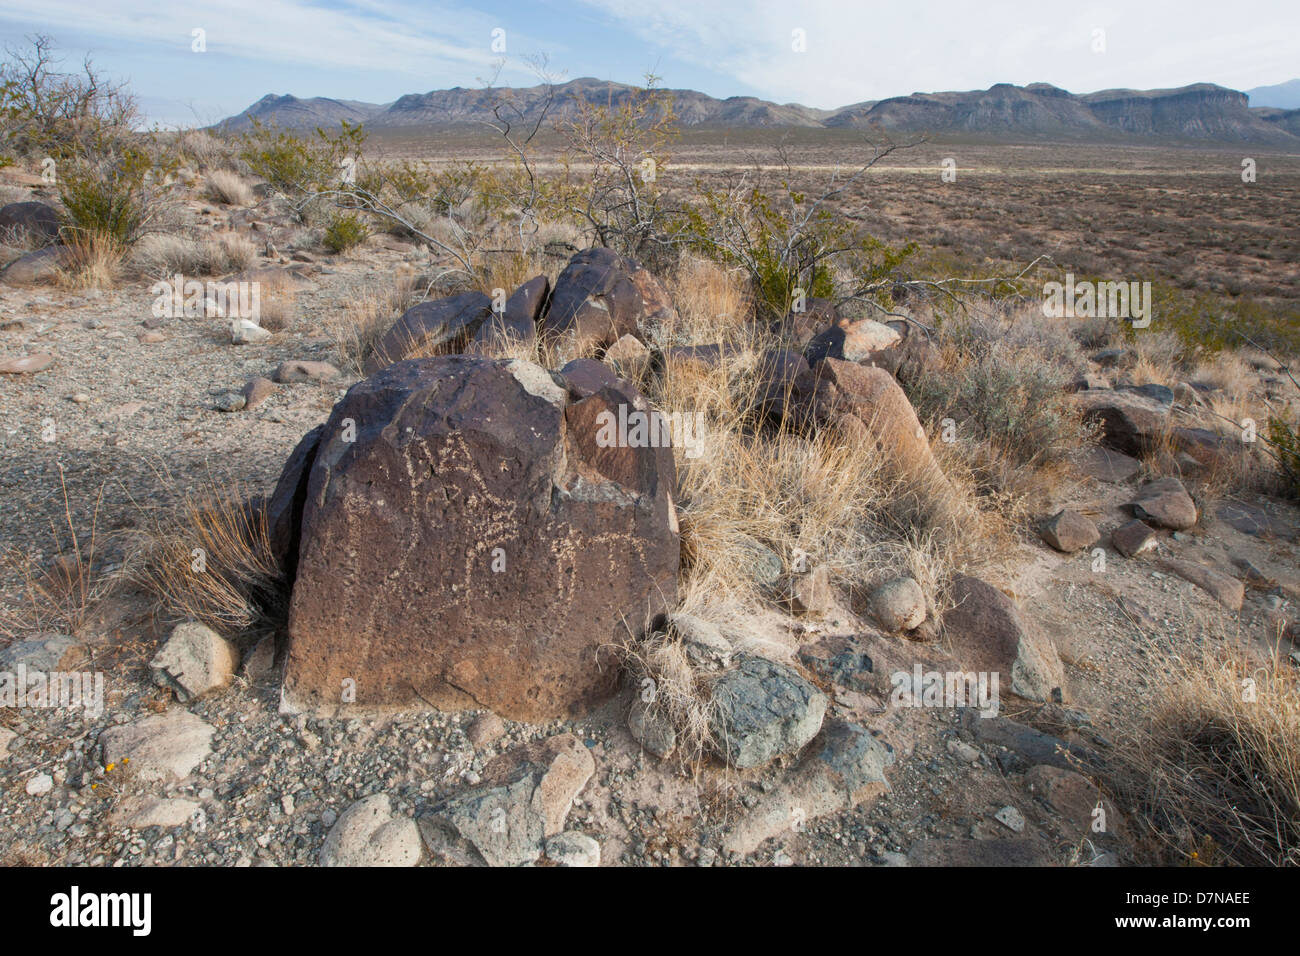 Petroglyph at the Three Rivers Petroglyph Site near Tularosa, New Mexico. Stock Photo